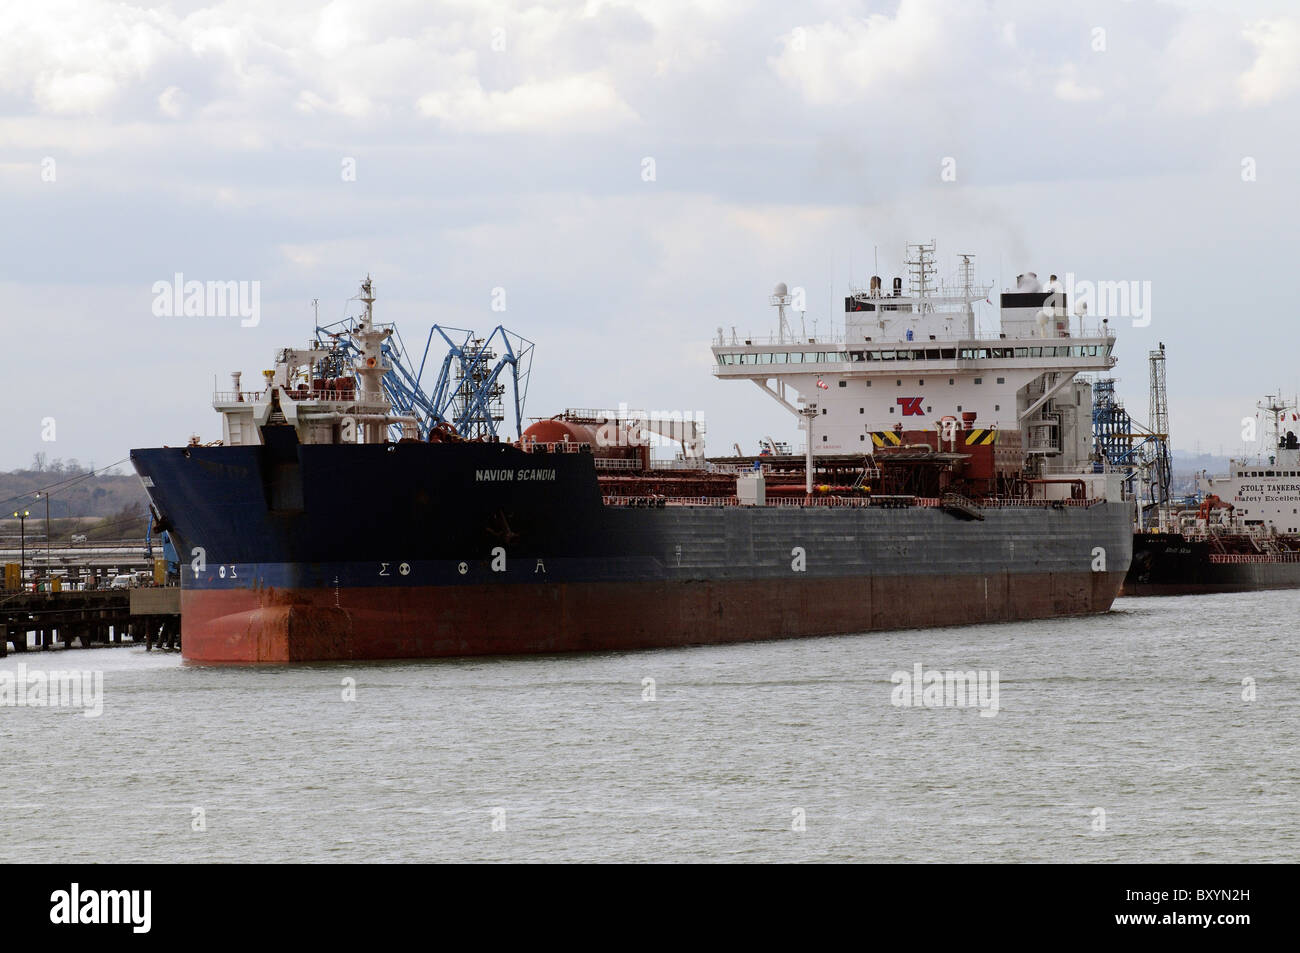 Die Navion Scandia ein Öl tragen Tanker neben einer Anlegestelle in Fawley Raffinerie an Southampton Water England Stockfoto